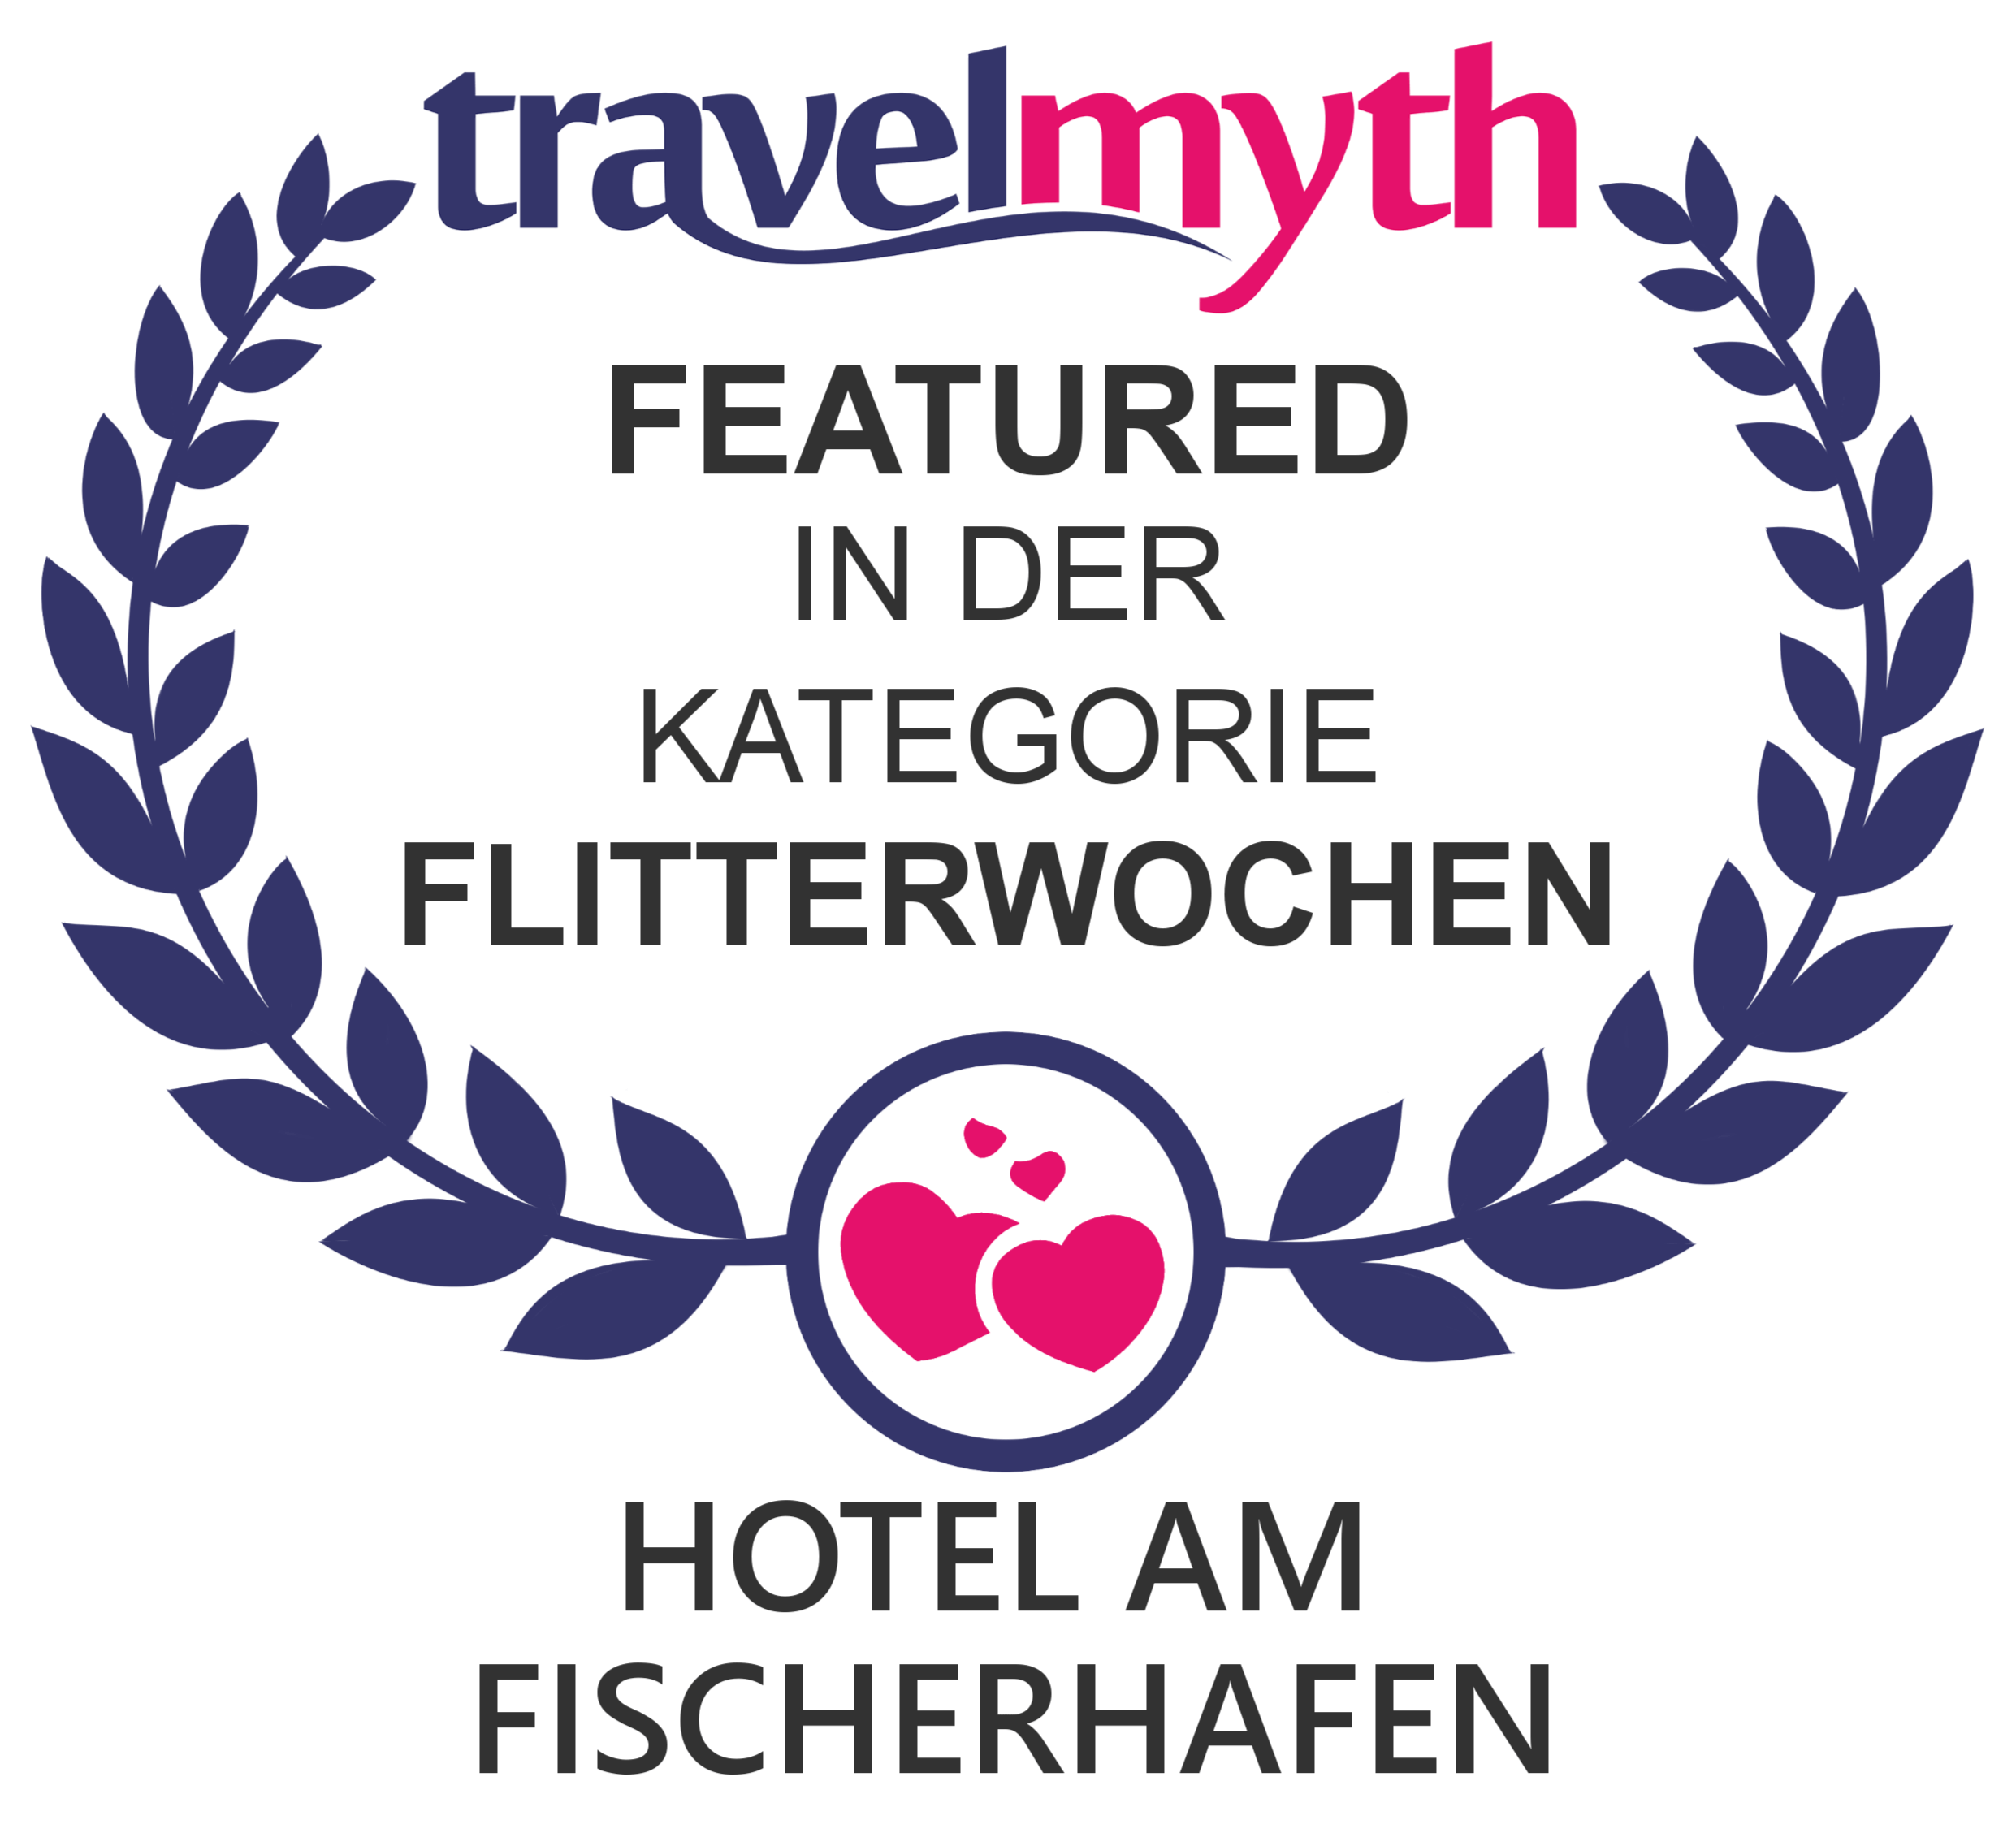 Travelmyth Award für Flitterwochen